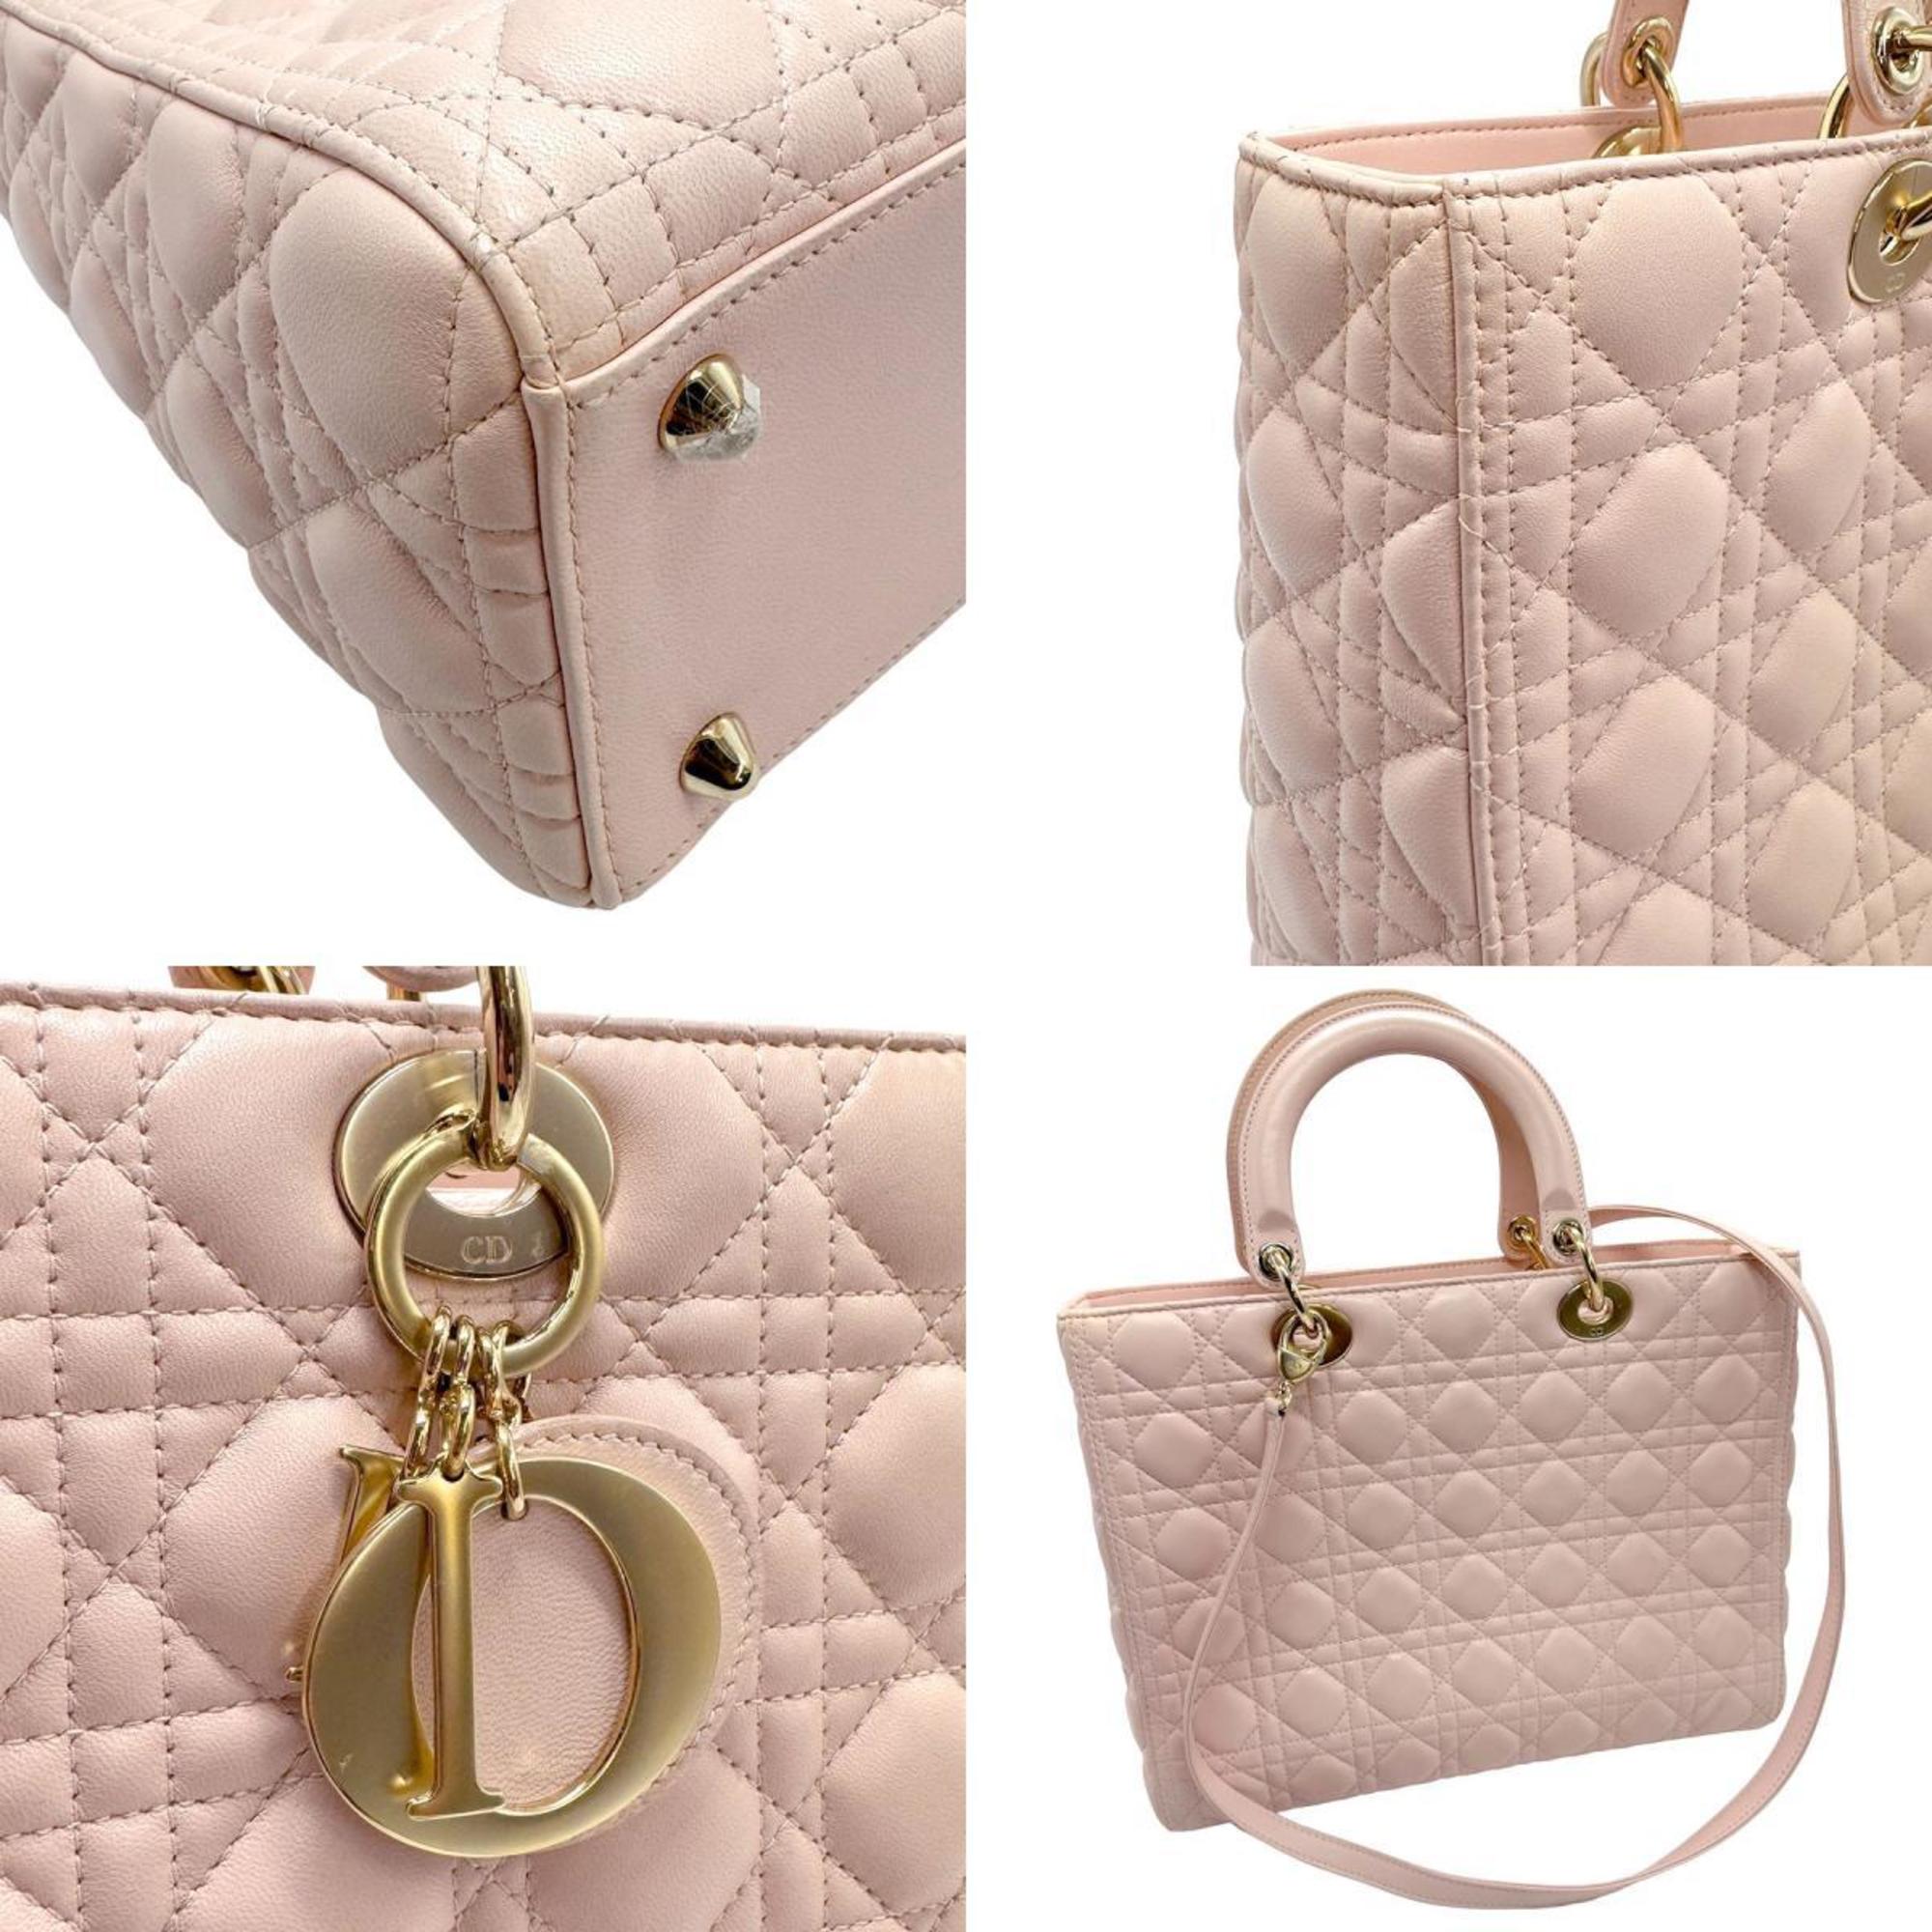 Christian Dior handbag shoulder bag Lady leather light pink gold women's z1347